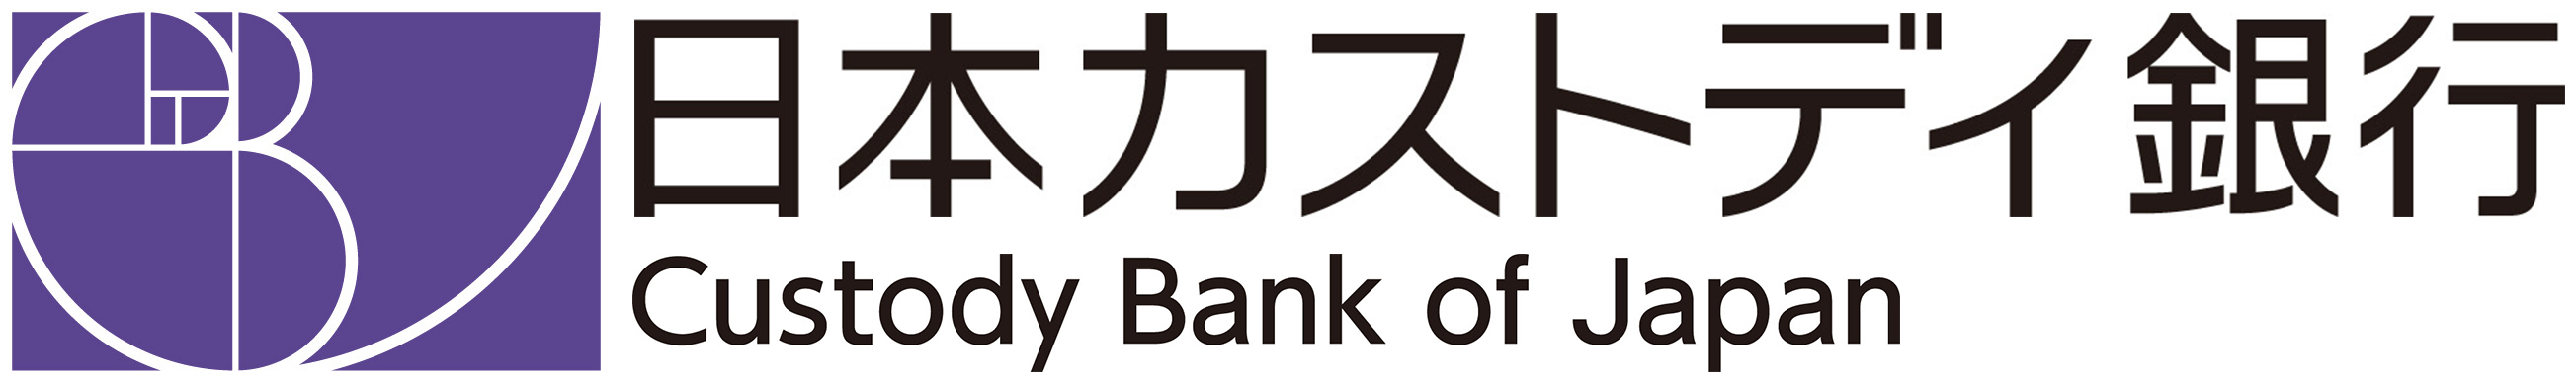 株式会社日本カストディ銀行のロゴ